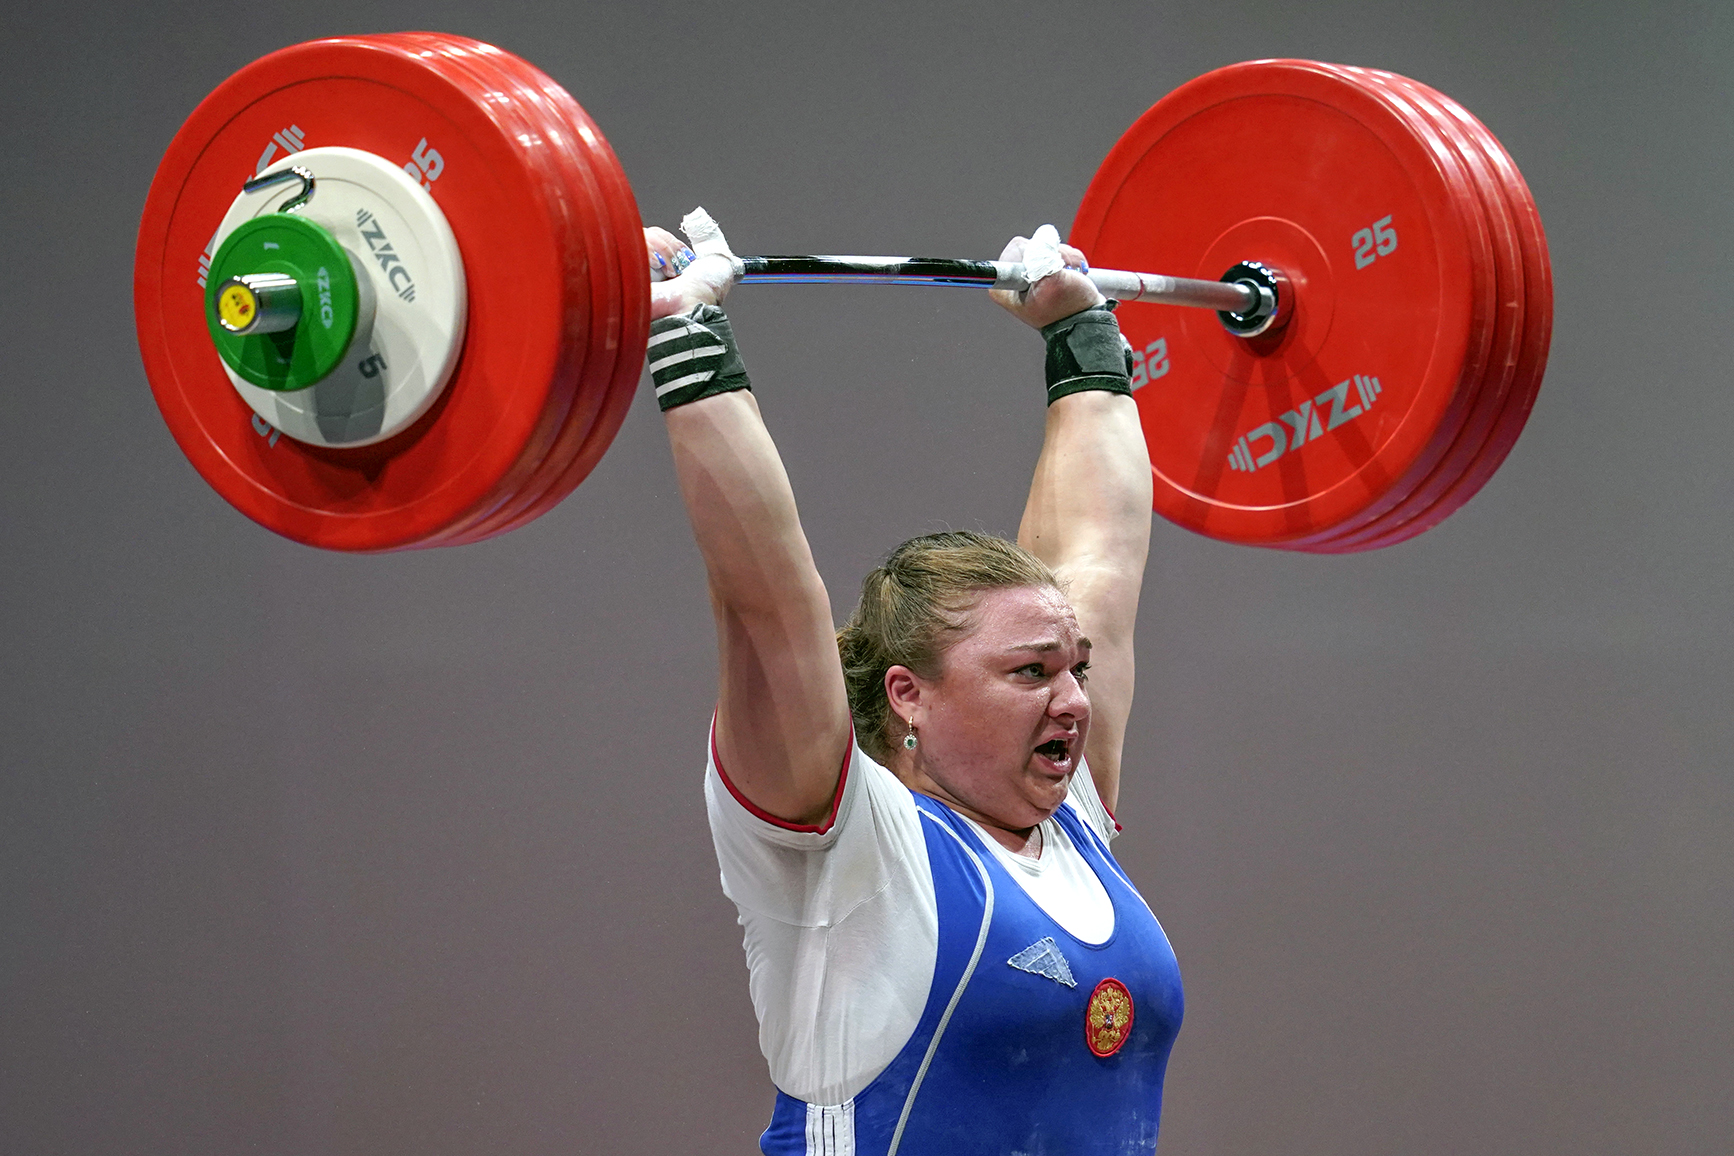 Tatiana Kashirina, Russian athletes